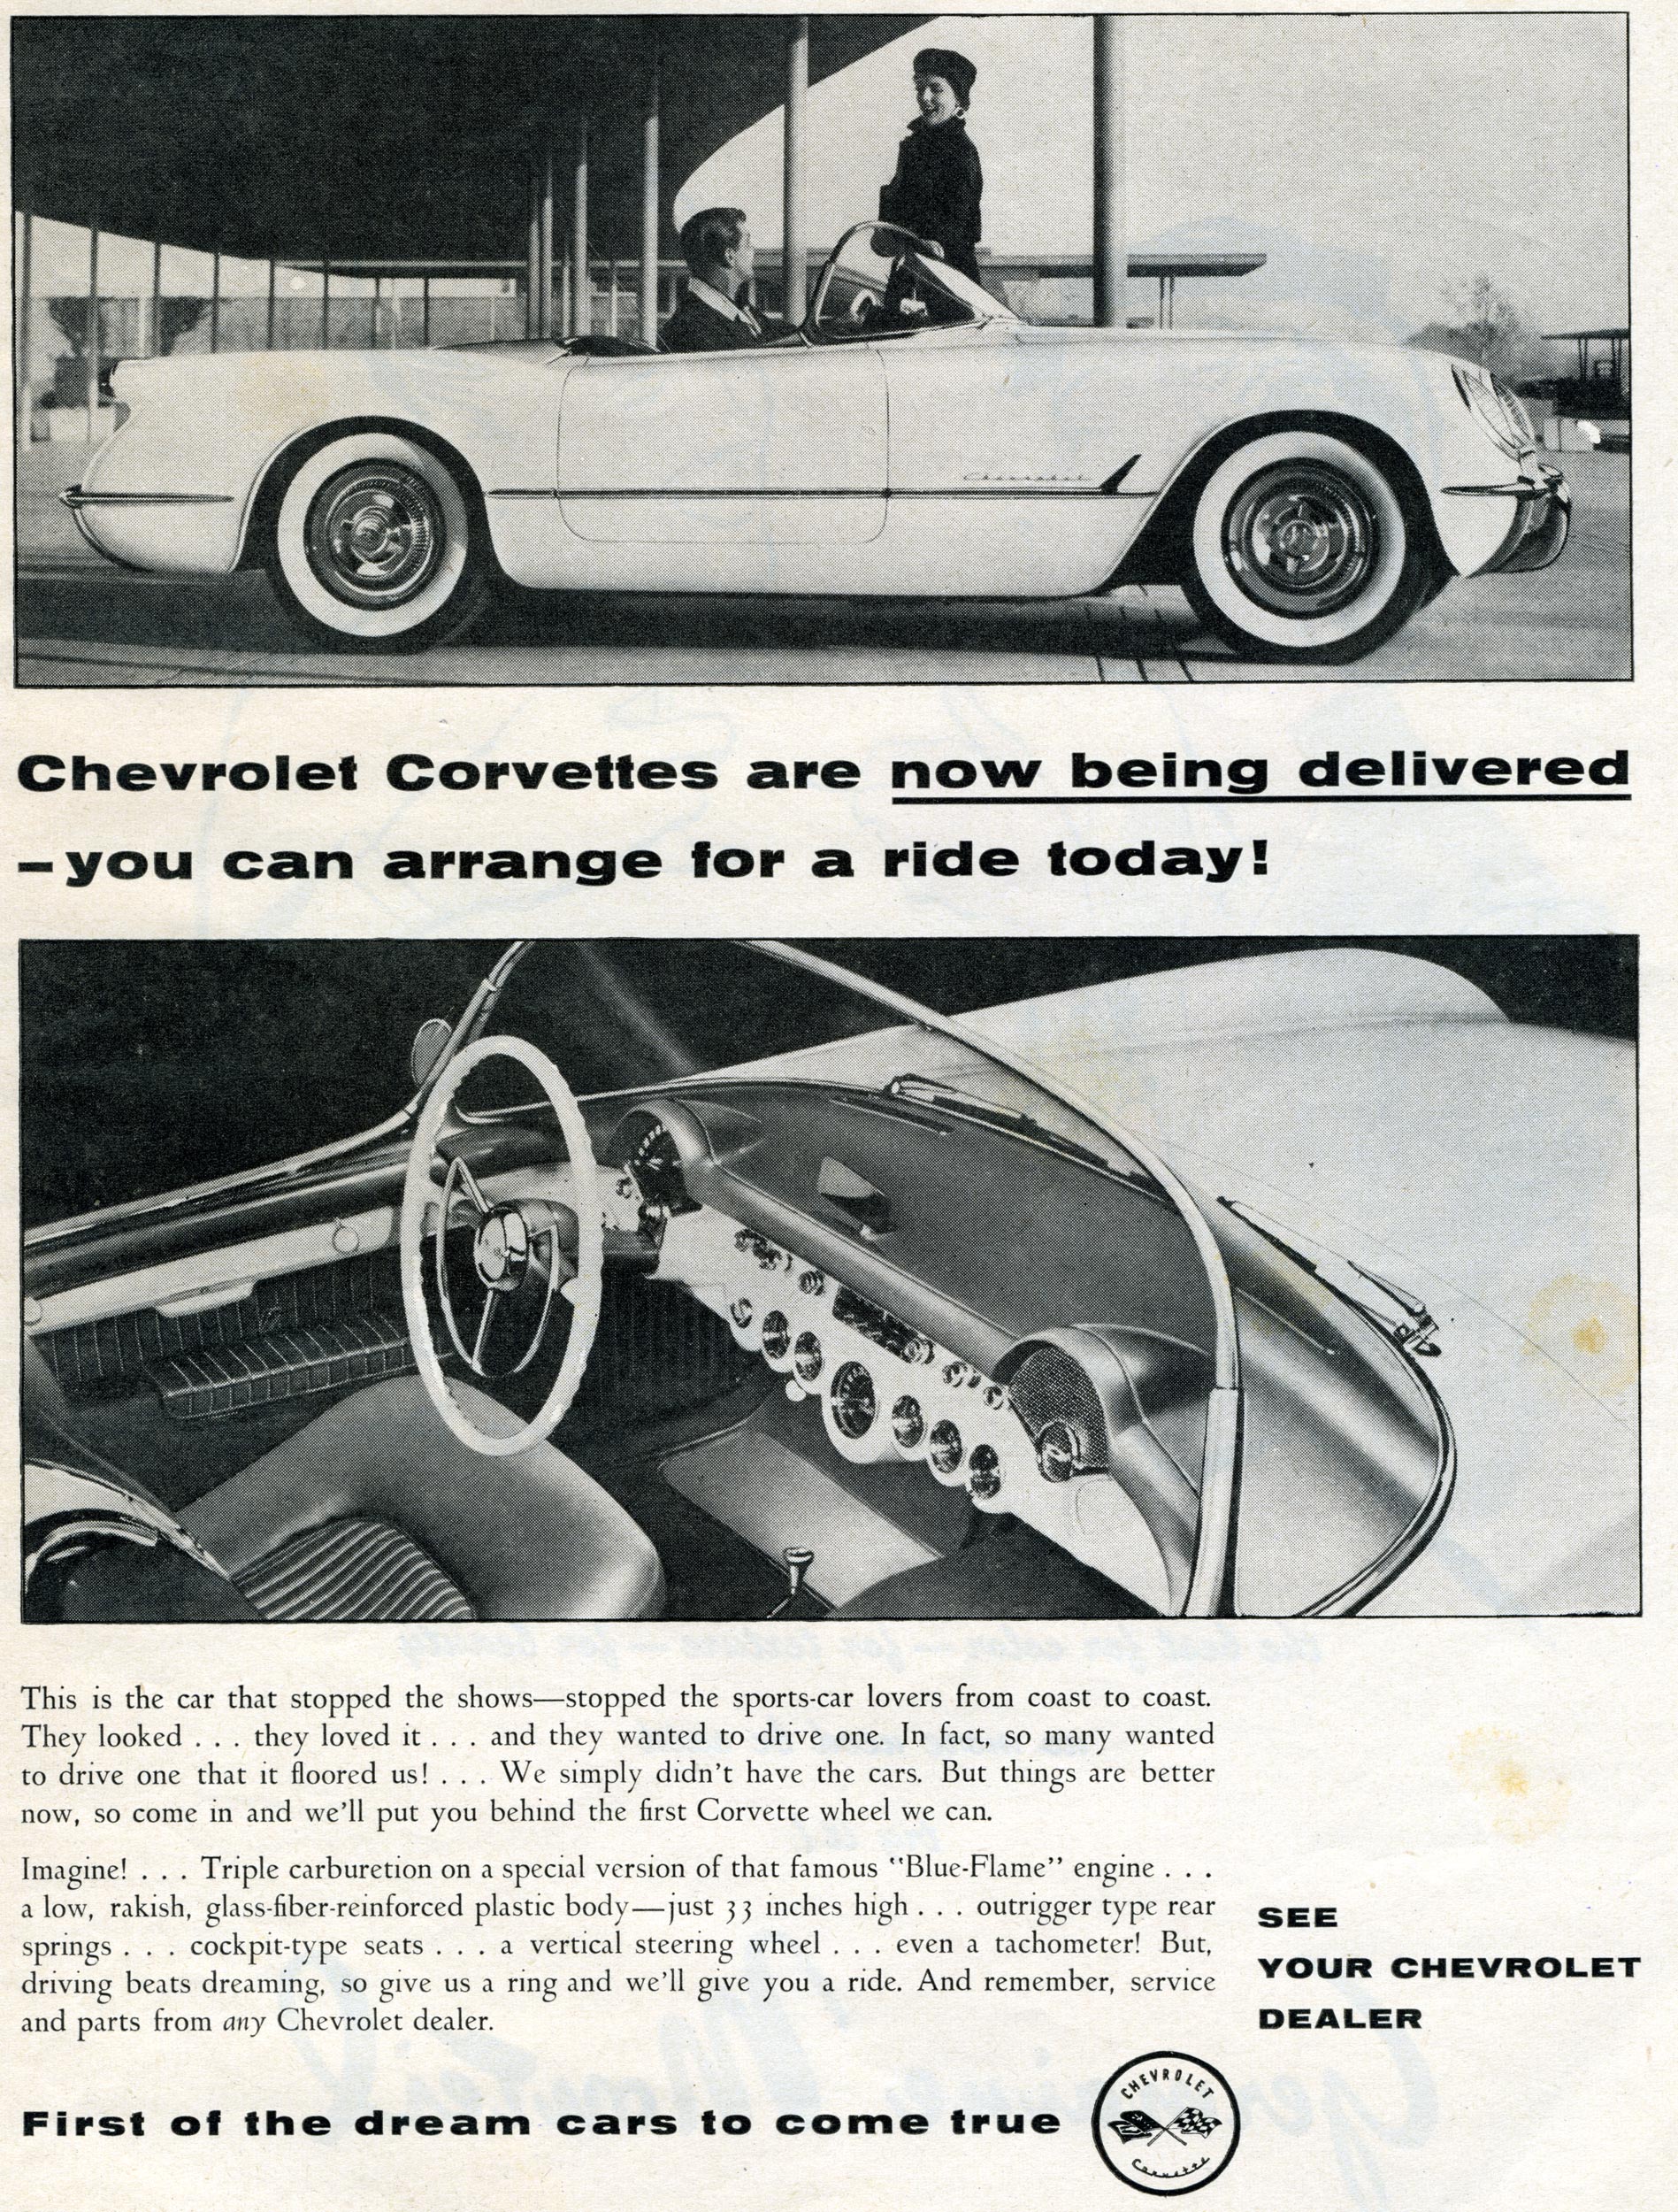 1957 Chevy Corvette Fuelie Is A C1 Dream Car